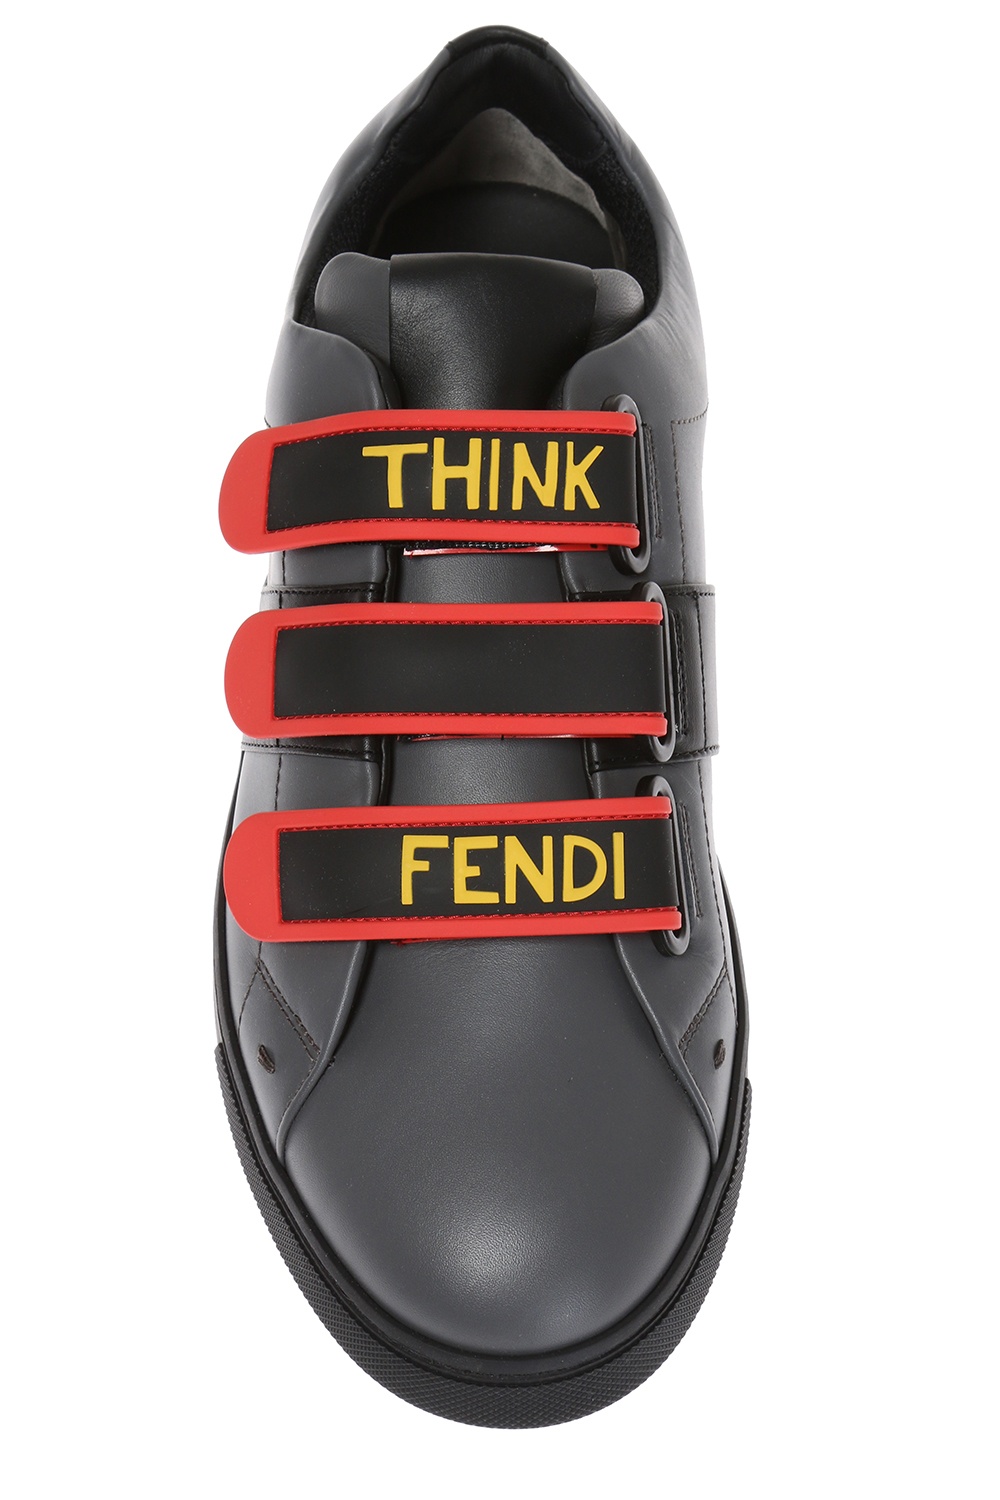 Fendi Athletic Shoes for Men